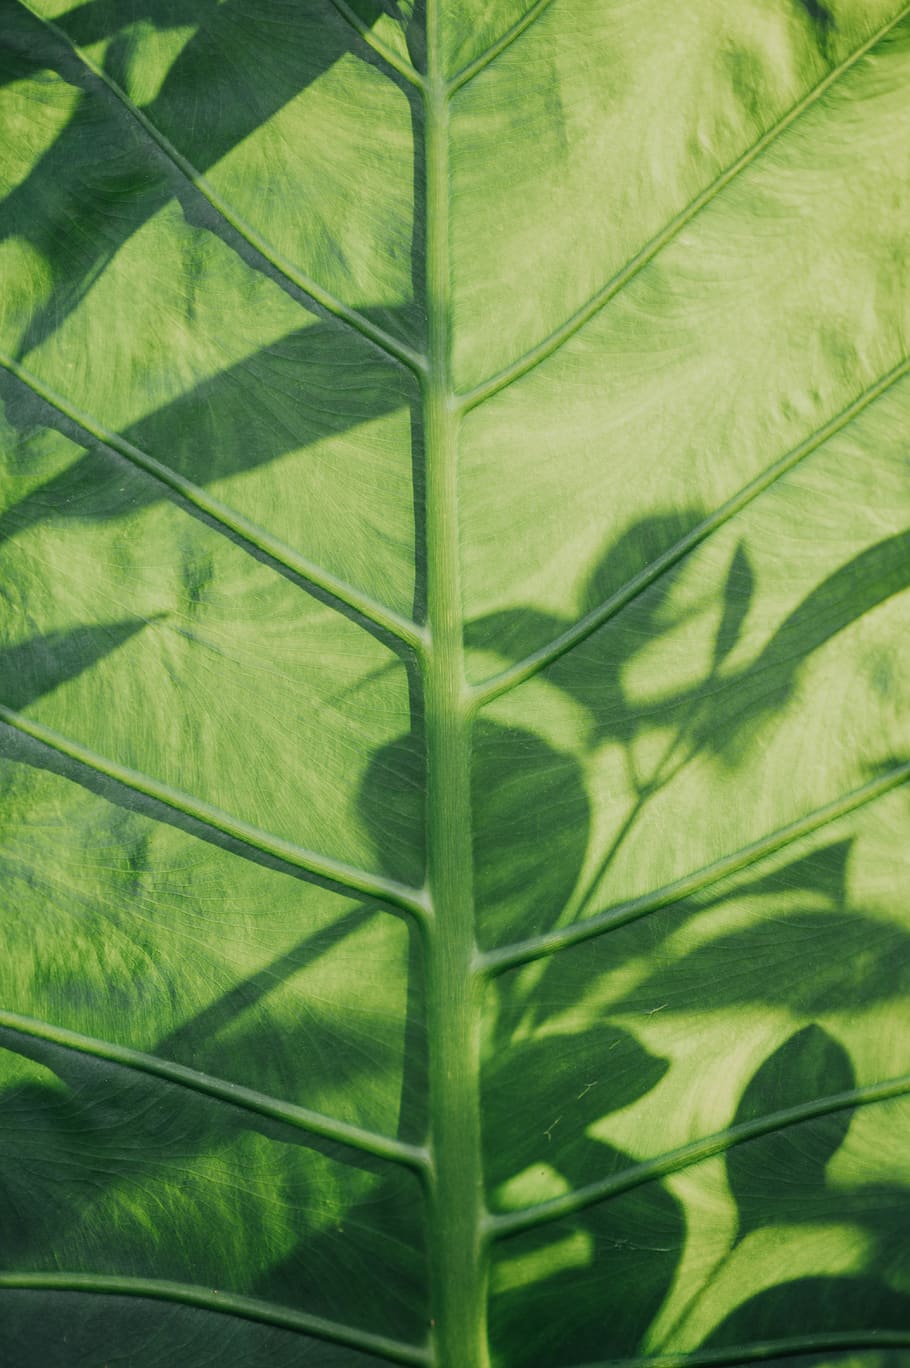 HD wallpaper: Colocasia esculenta leaf, plant, veins, tumblr